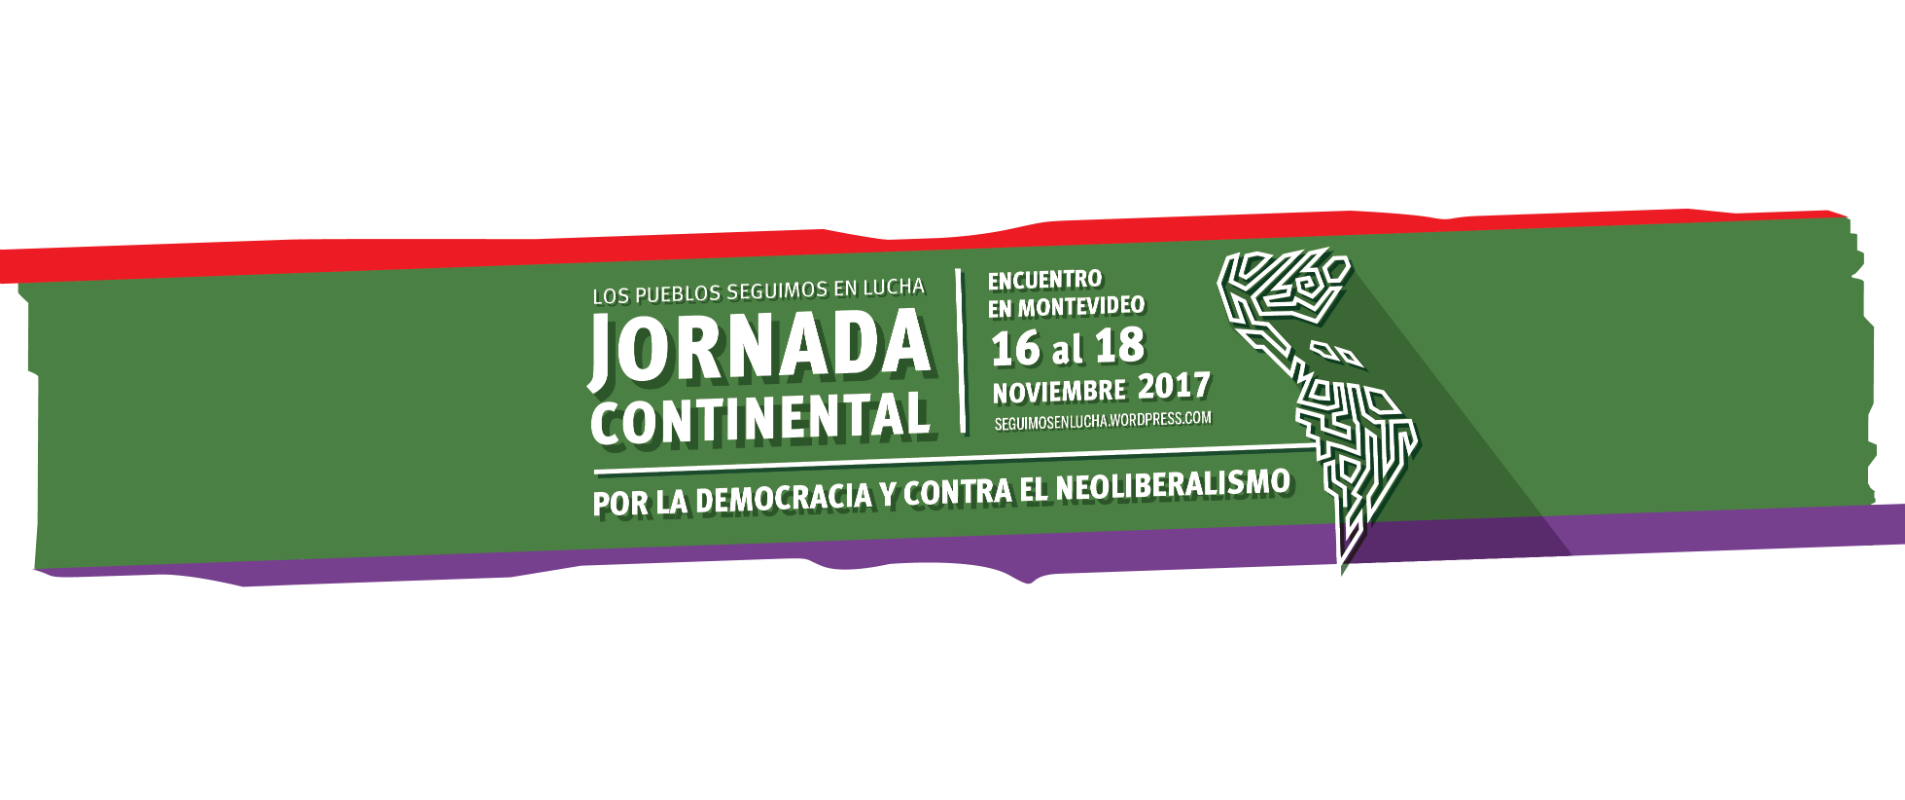 (IMAGEN) Jornada Continental por la Democracia y contra el neoliberalismo